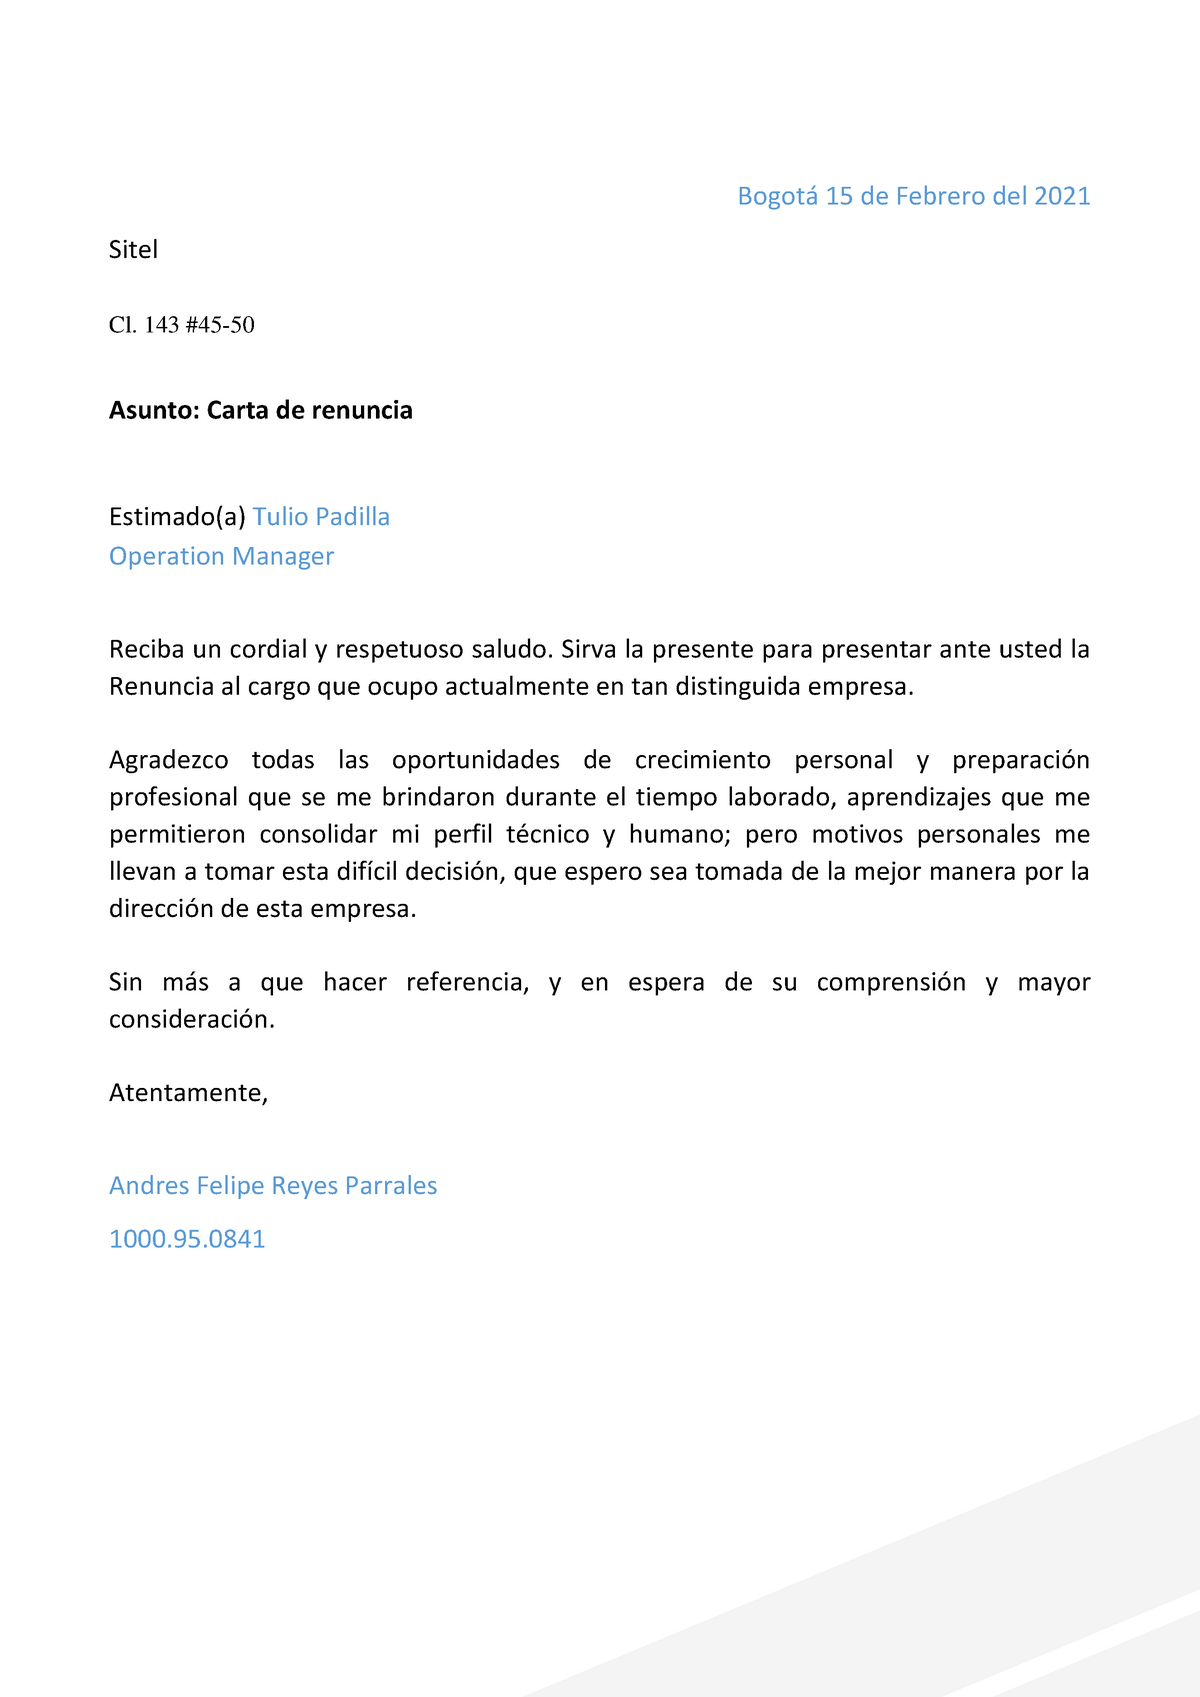 46 modelo de carta de renuncia voluntaria - DESCARGA Bogotá 15 de Febrero  del 2021 Sitel Cl. 143 - Studocu